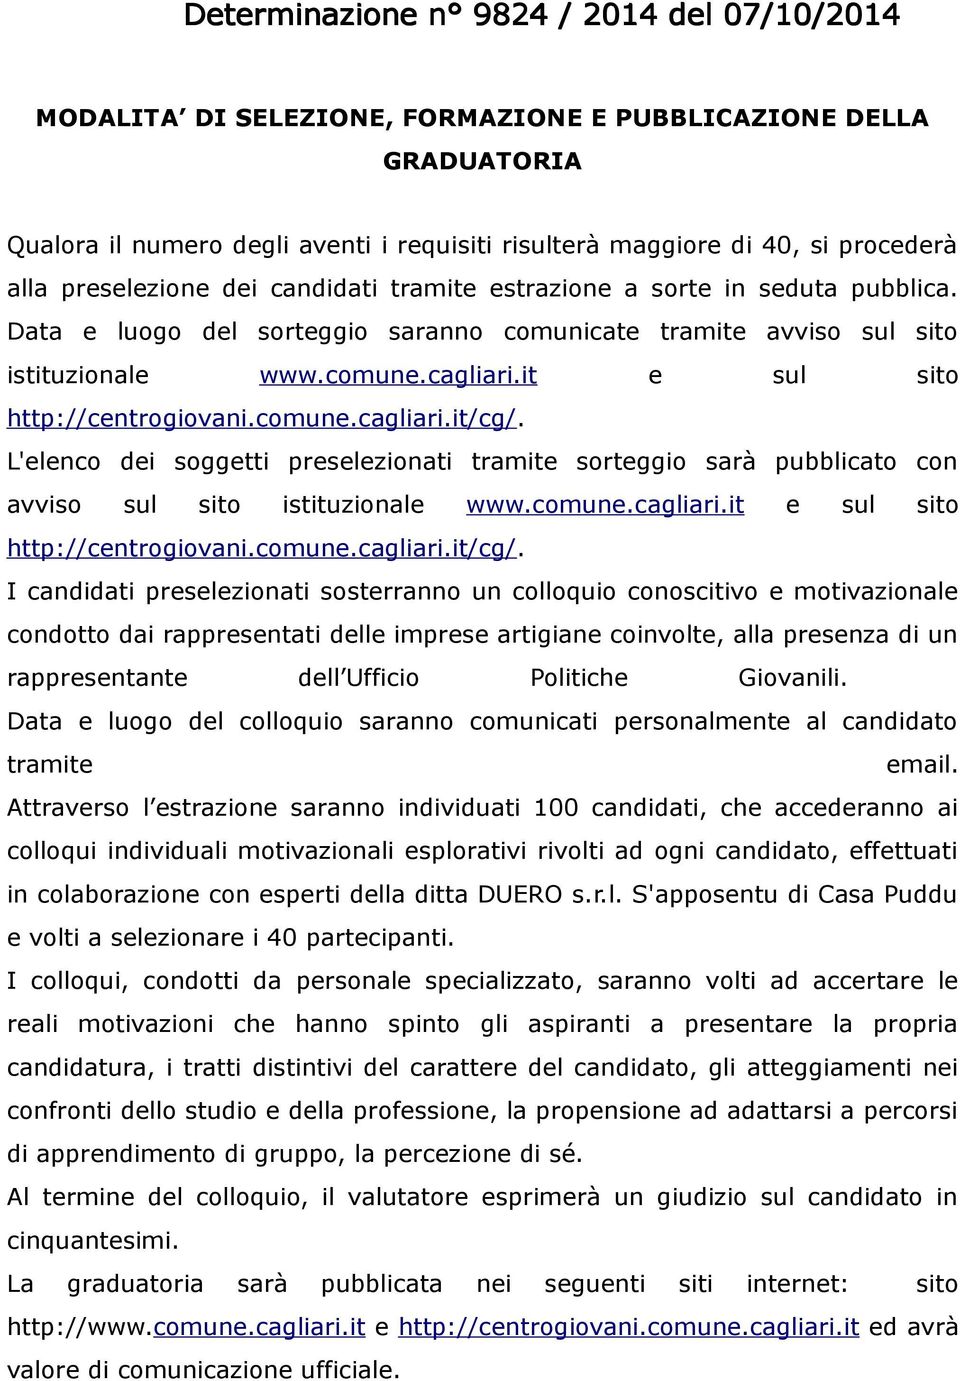 L'elenco dei soggetti preselezionati tramite sorteggio sarà pubblicato con avviso sul sito istituzionale www.comune.cagliari.it e sul sito http://centrogiovani.comune.cagliari.it/cg/.